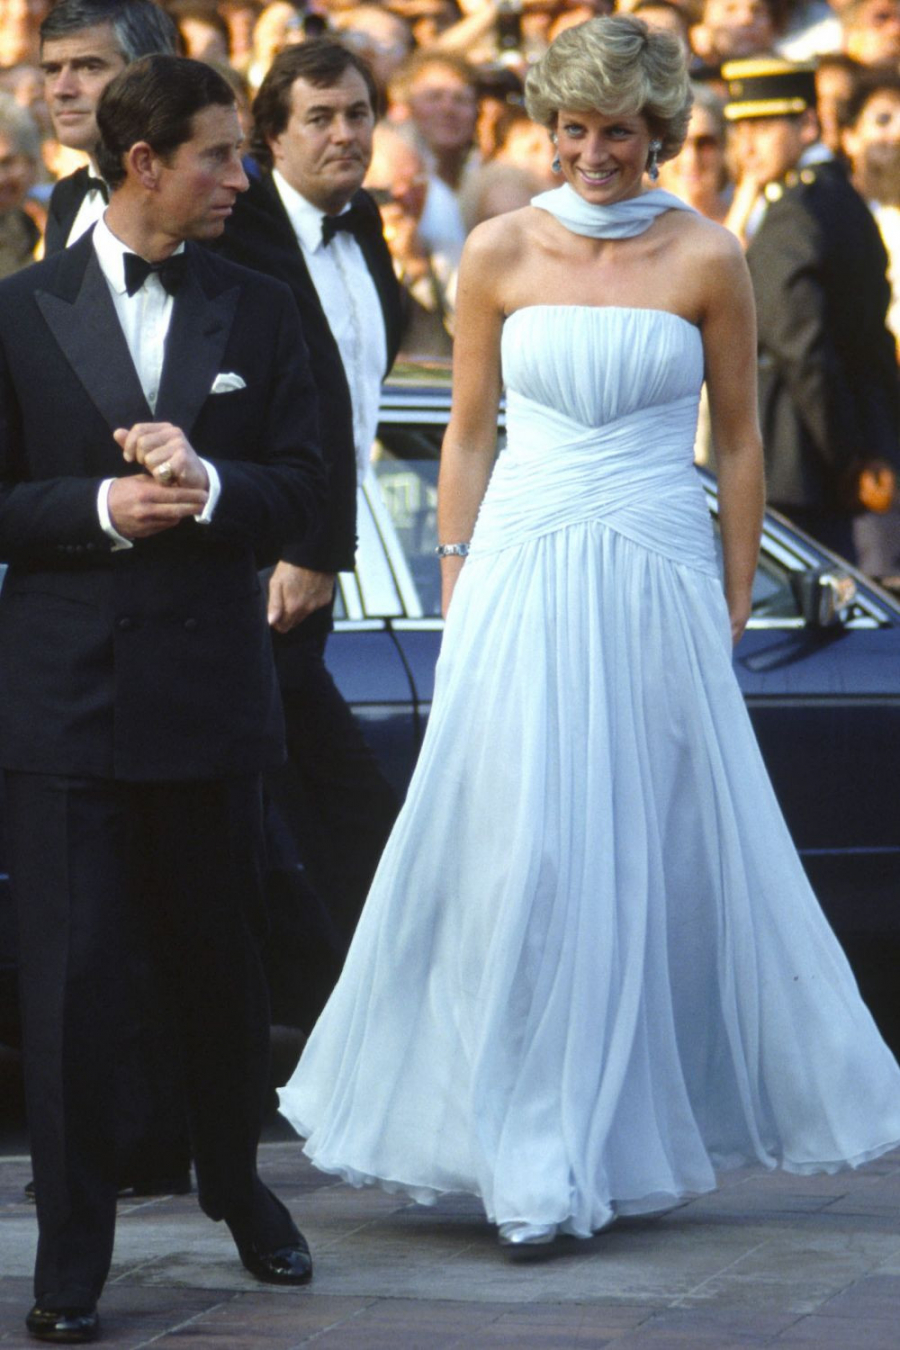 Công nương Diana đã khuấy động thảm đỏ Cannes với chiếc đầm xòe màu xanh nhạt thật thanh lịch, thướt tha.